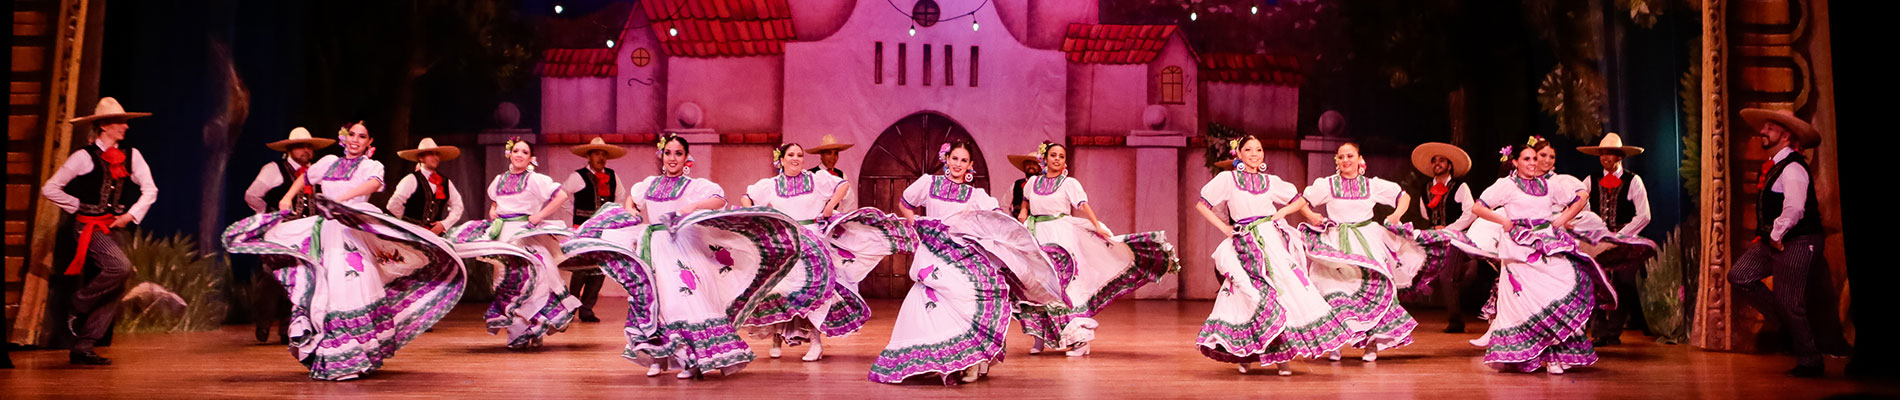 Folclor mexicano